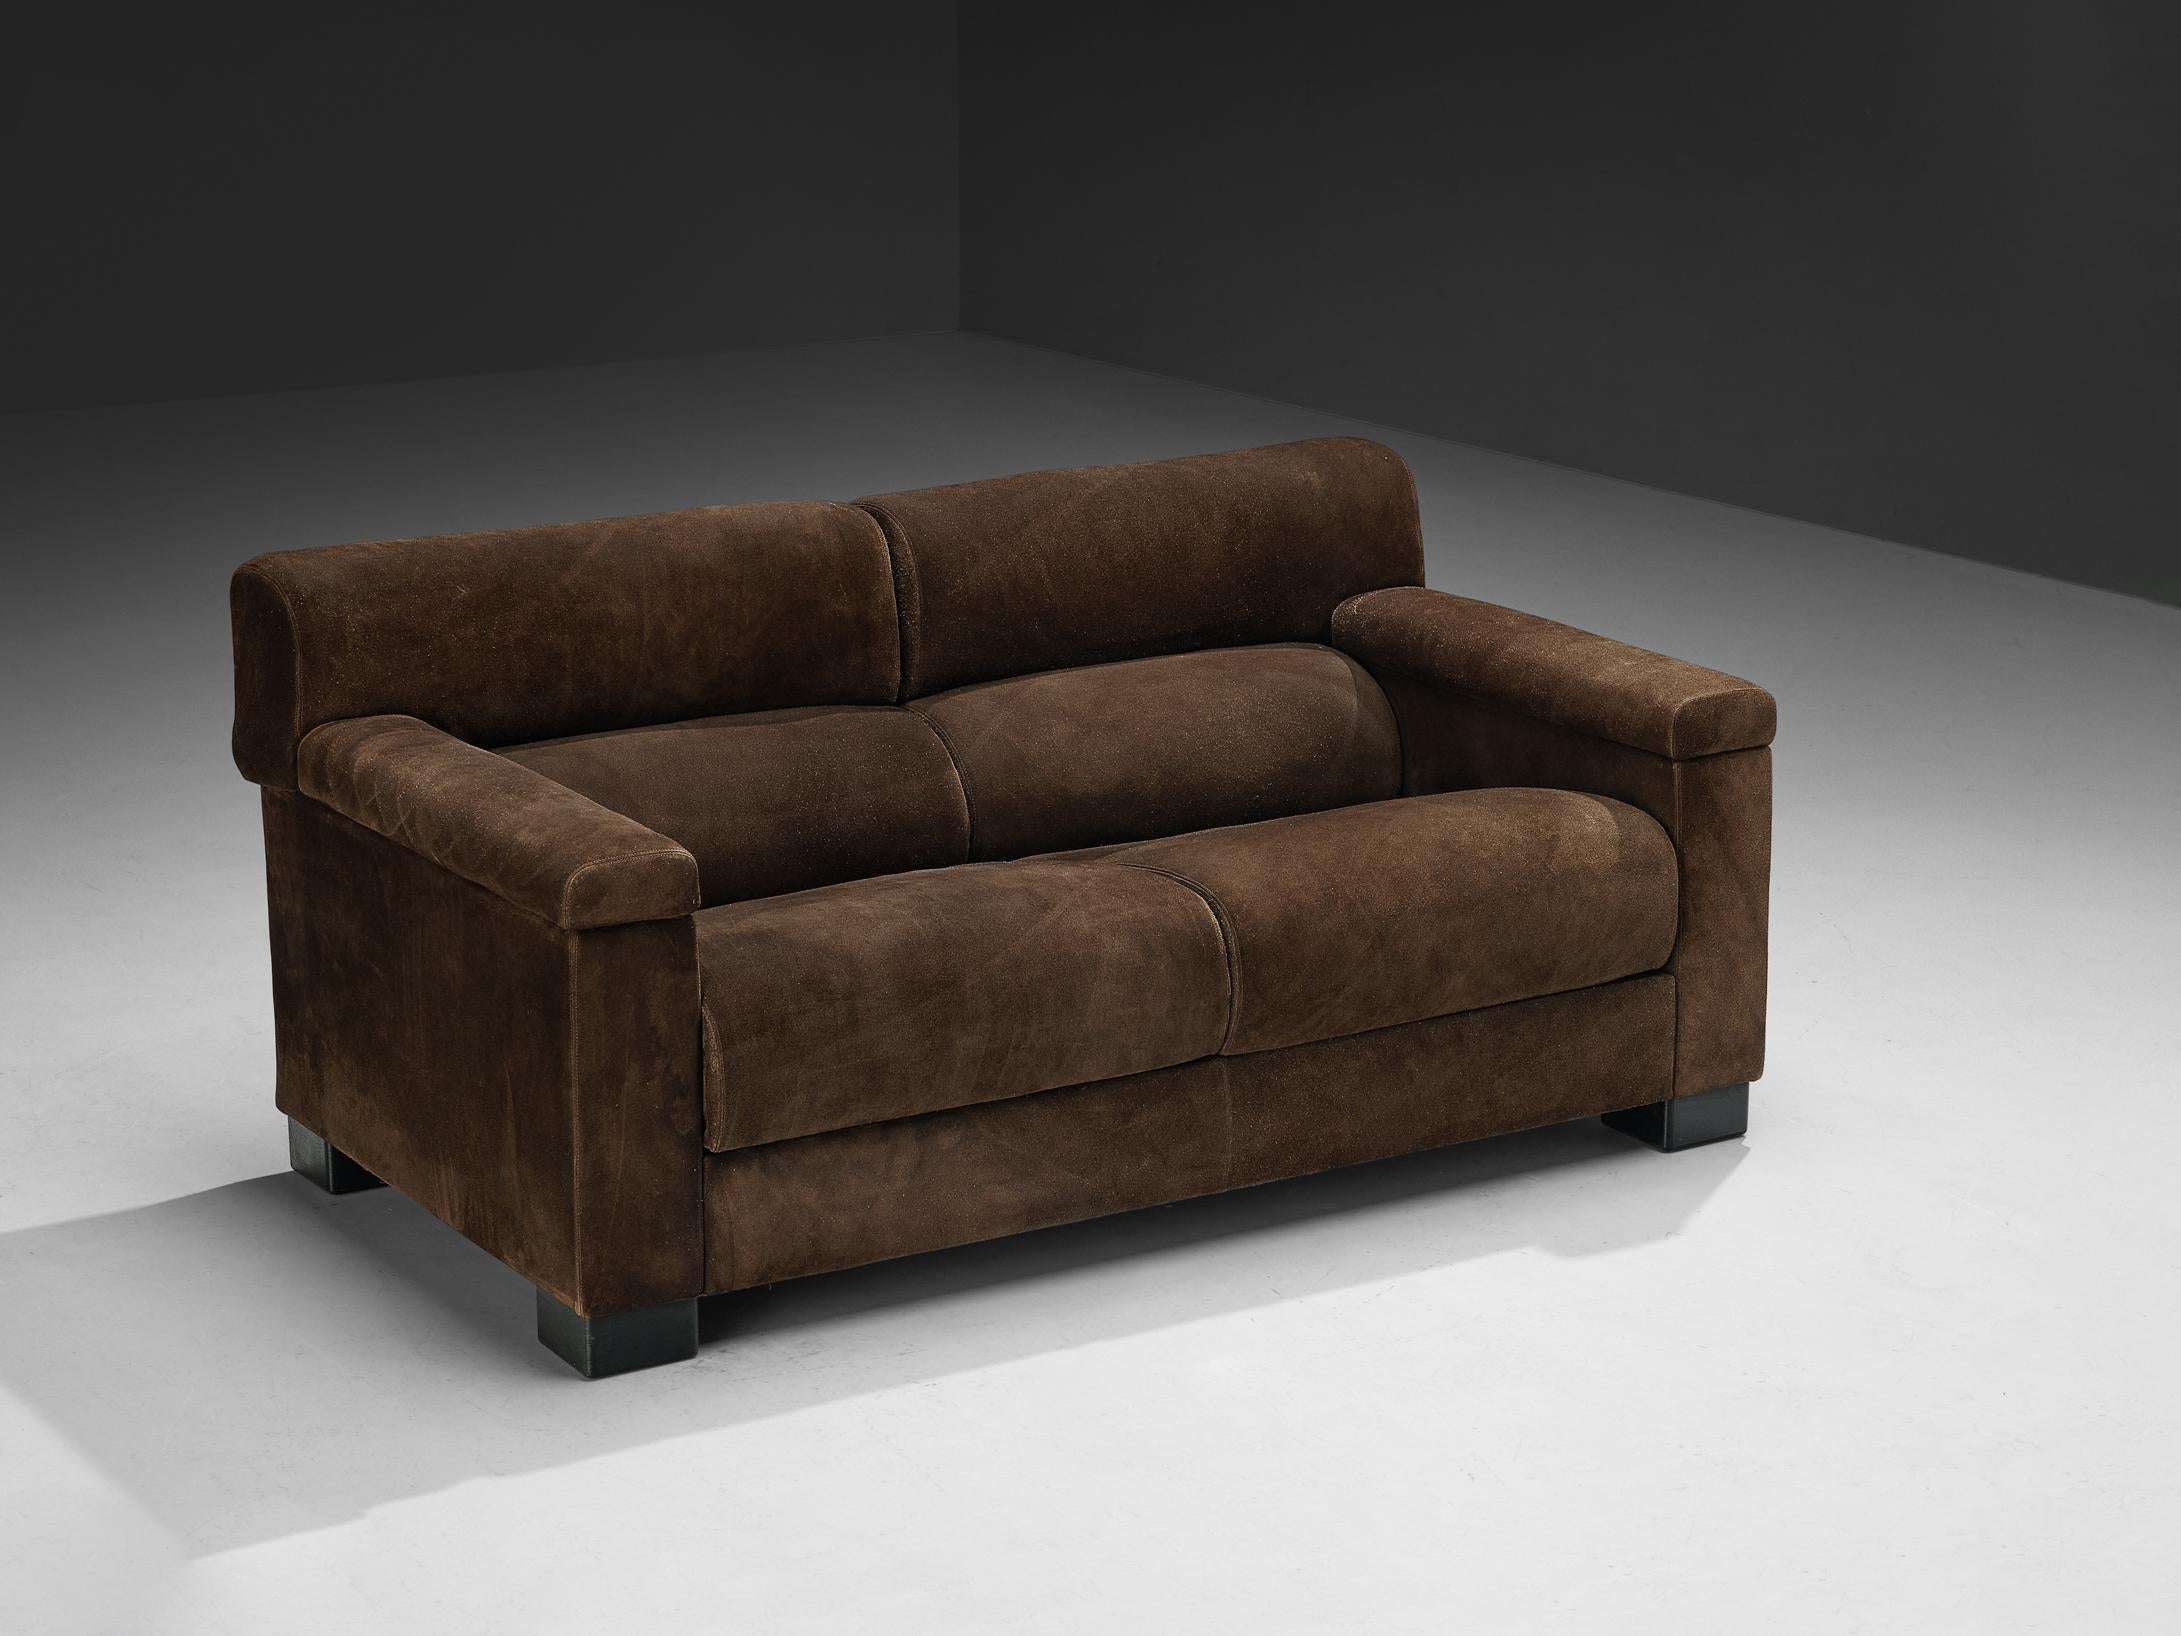 Tecno, Sofa, Wildleder, dunkel gebeiztes Holz, Italien, 1960er Jahre. 

Ein umfangreiches und großes Sofa des italienischen Möbelherstellers Tecno. Das wuchtige Erscheinungsbild wird durch die Polsterung aus dunkelbraunem Wildleder noch verstärkt.